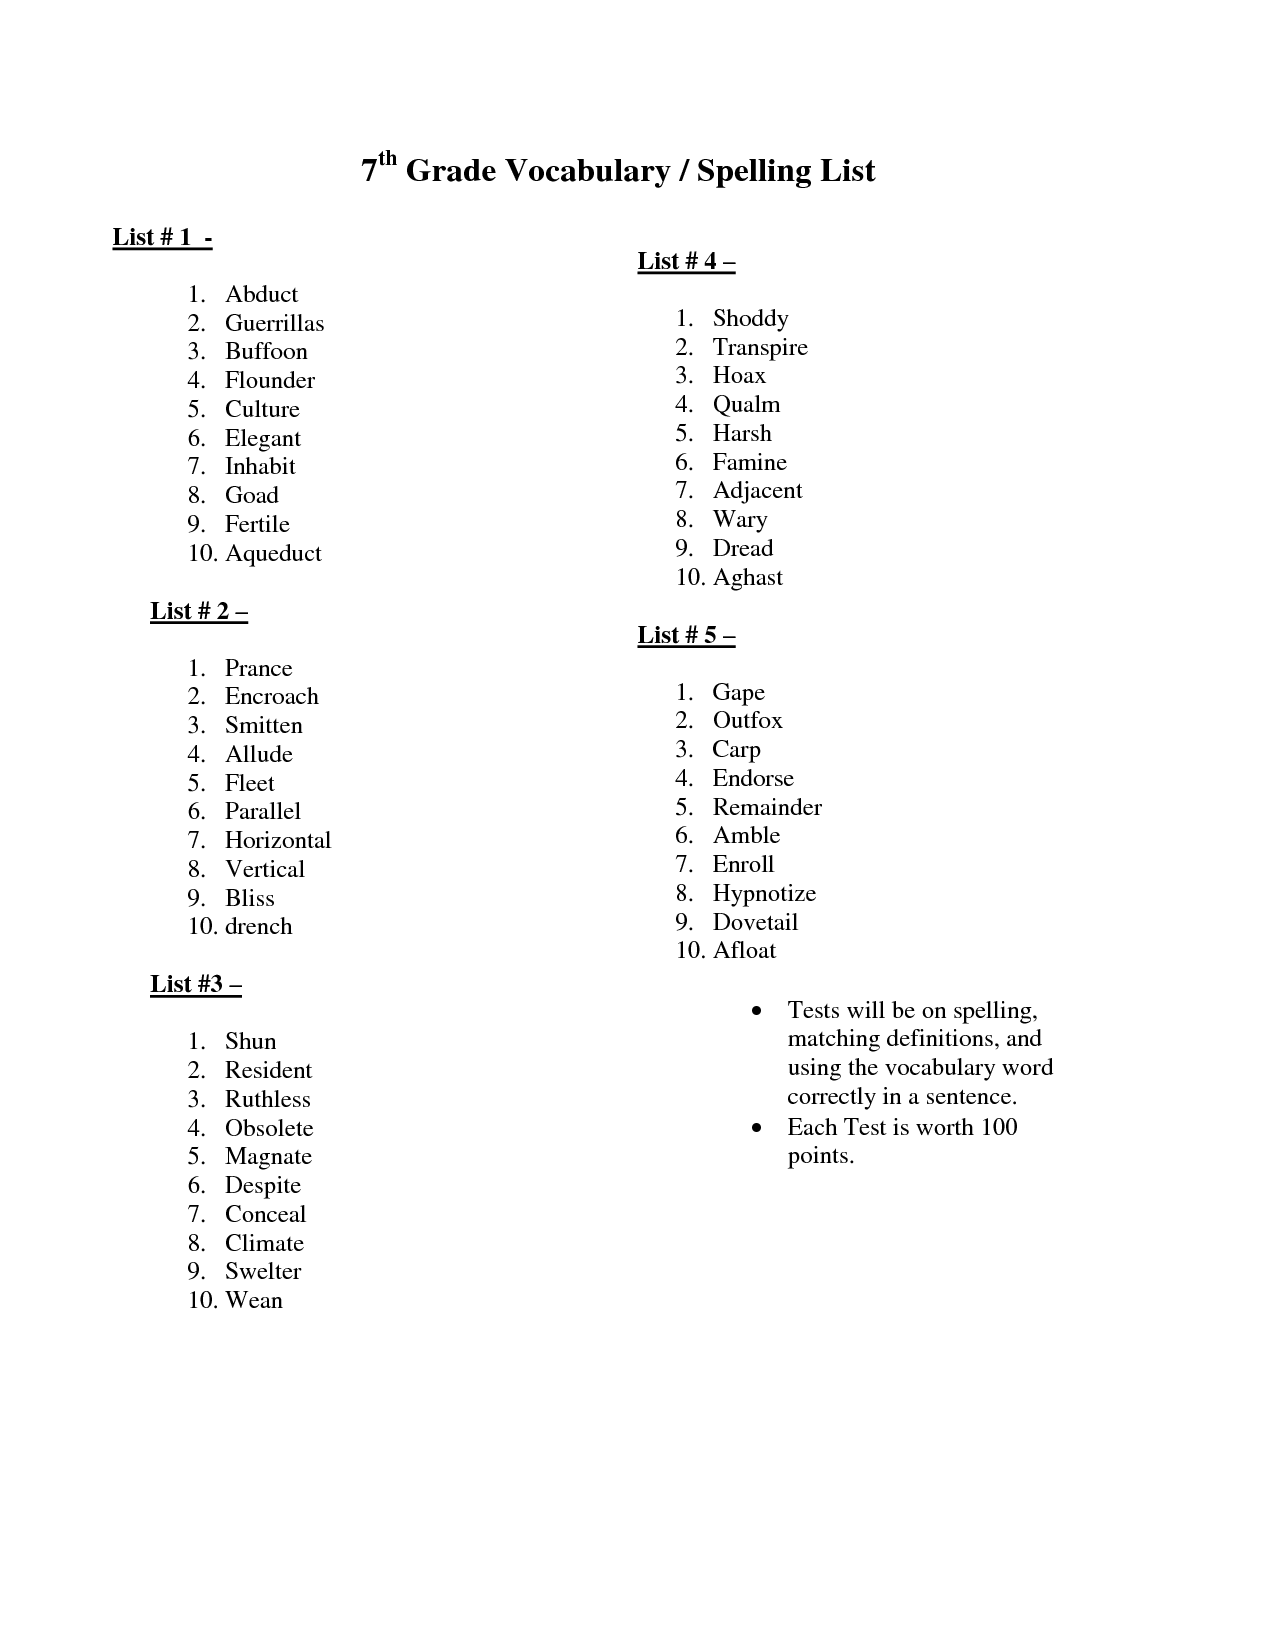 13-7th-grade-spelling-words-printable-worksheets-worksheeto